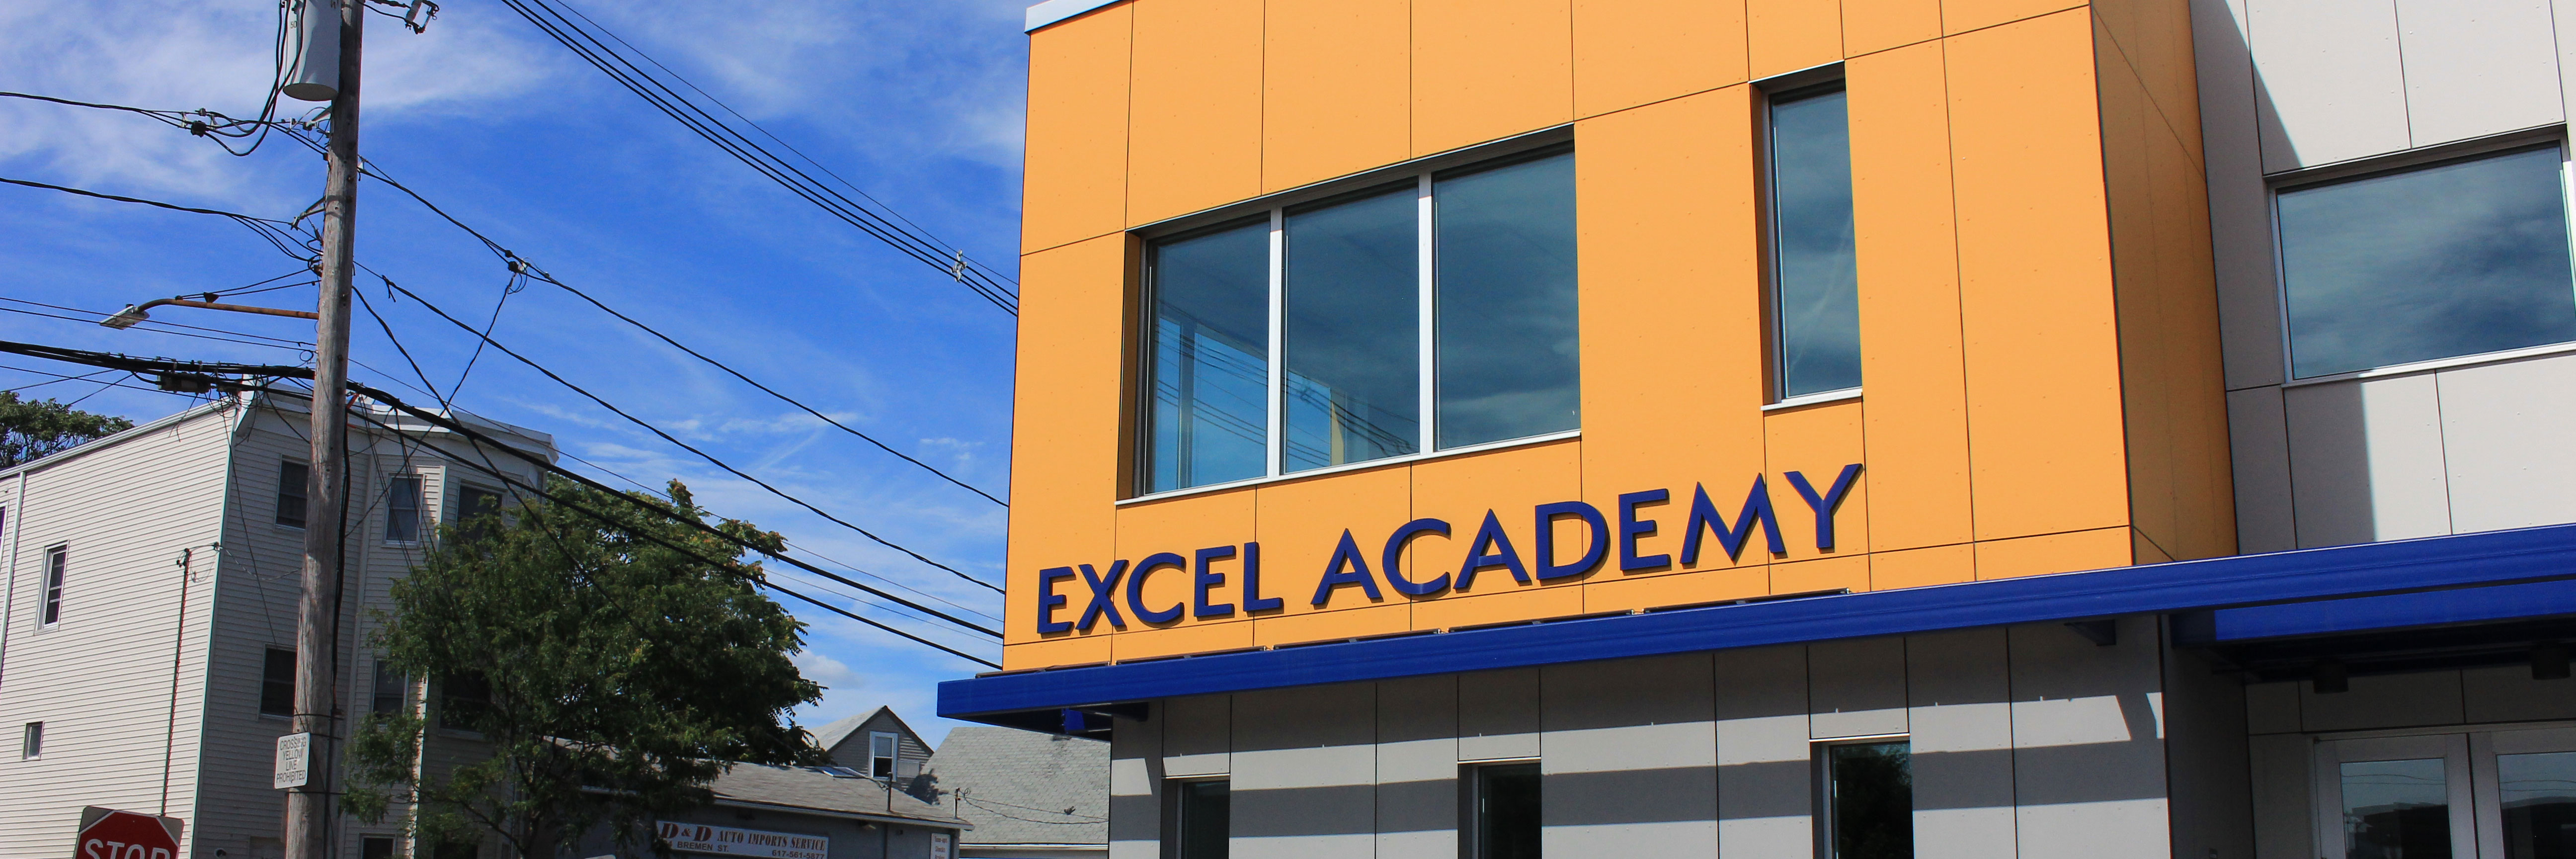 Excel Academy Charter High School Buscador de Escuelas de Boston